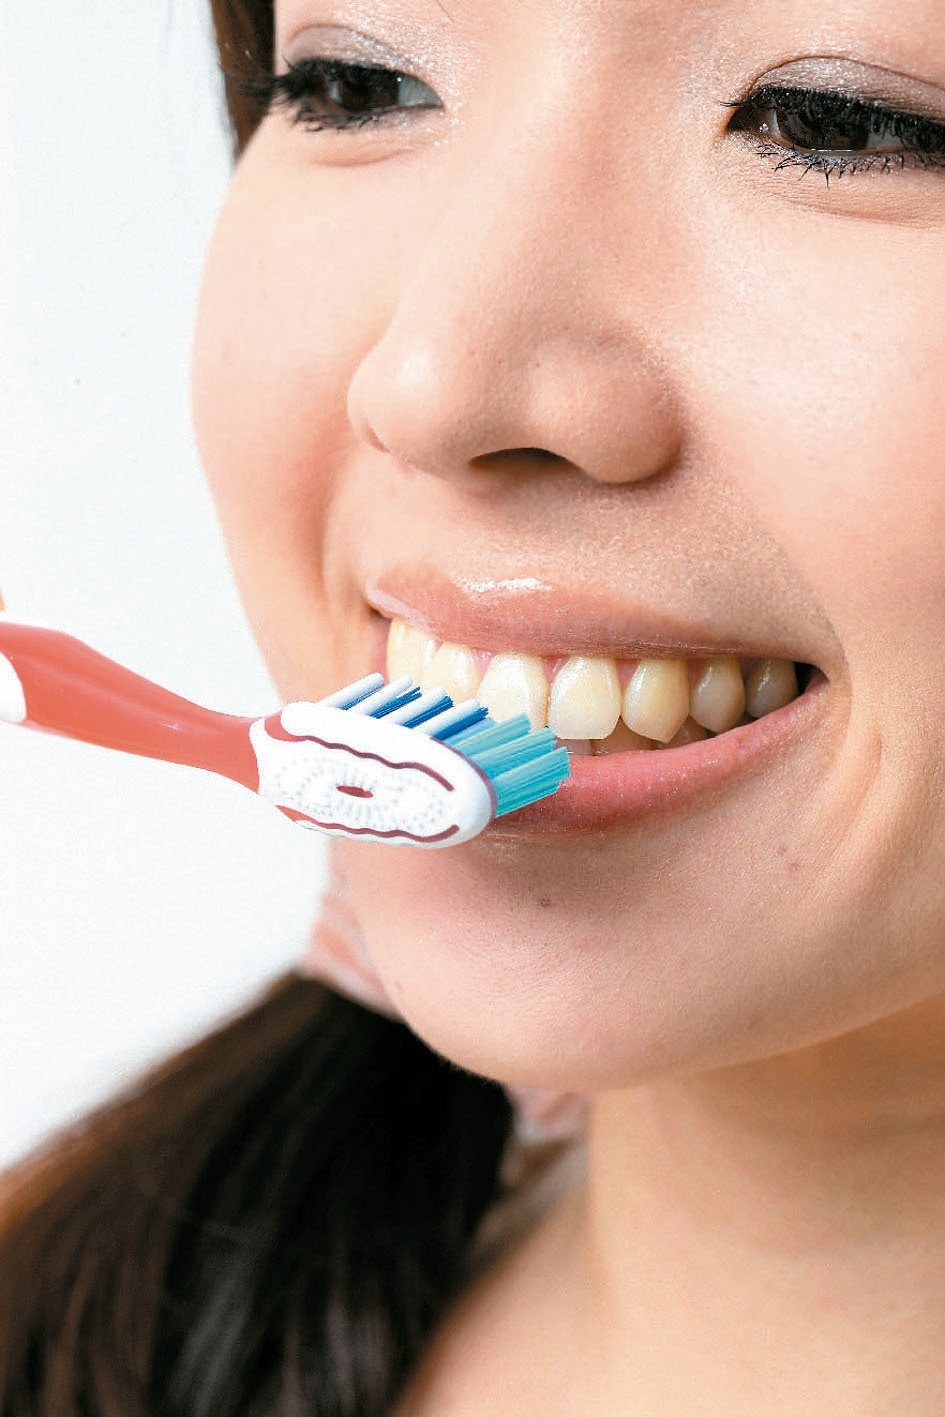 若是非病理性口臭，勤刷牙是清潔口腔的方法之一，建議應養成定期洗牙及口腔檢查的習慣。